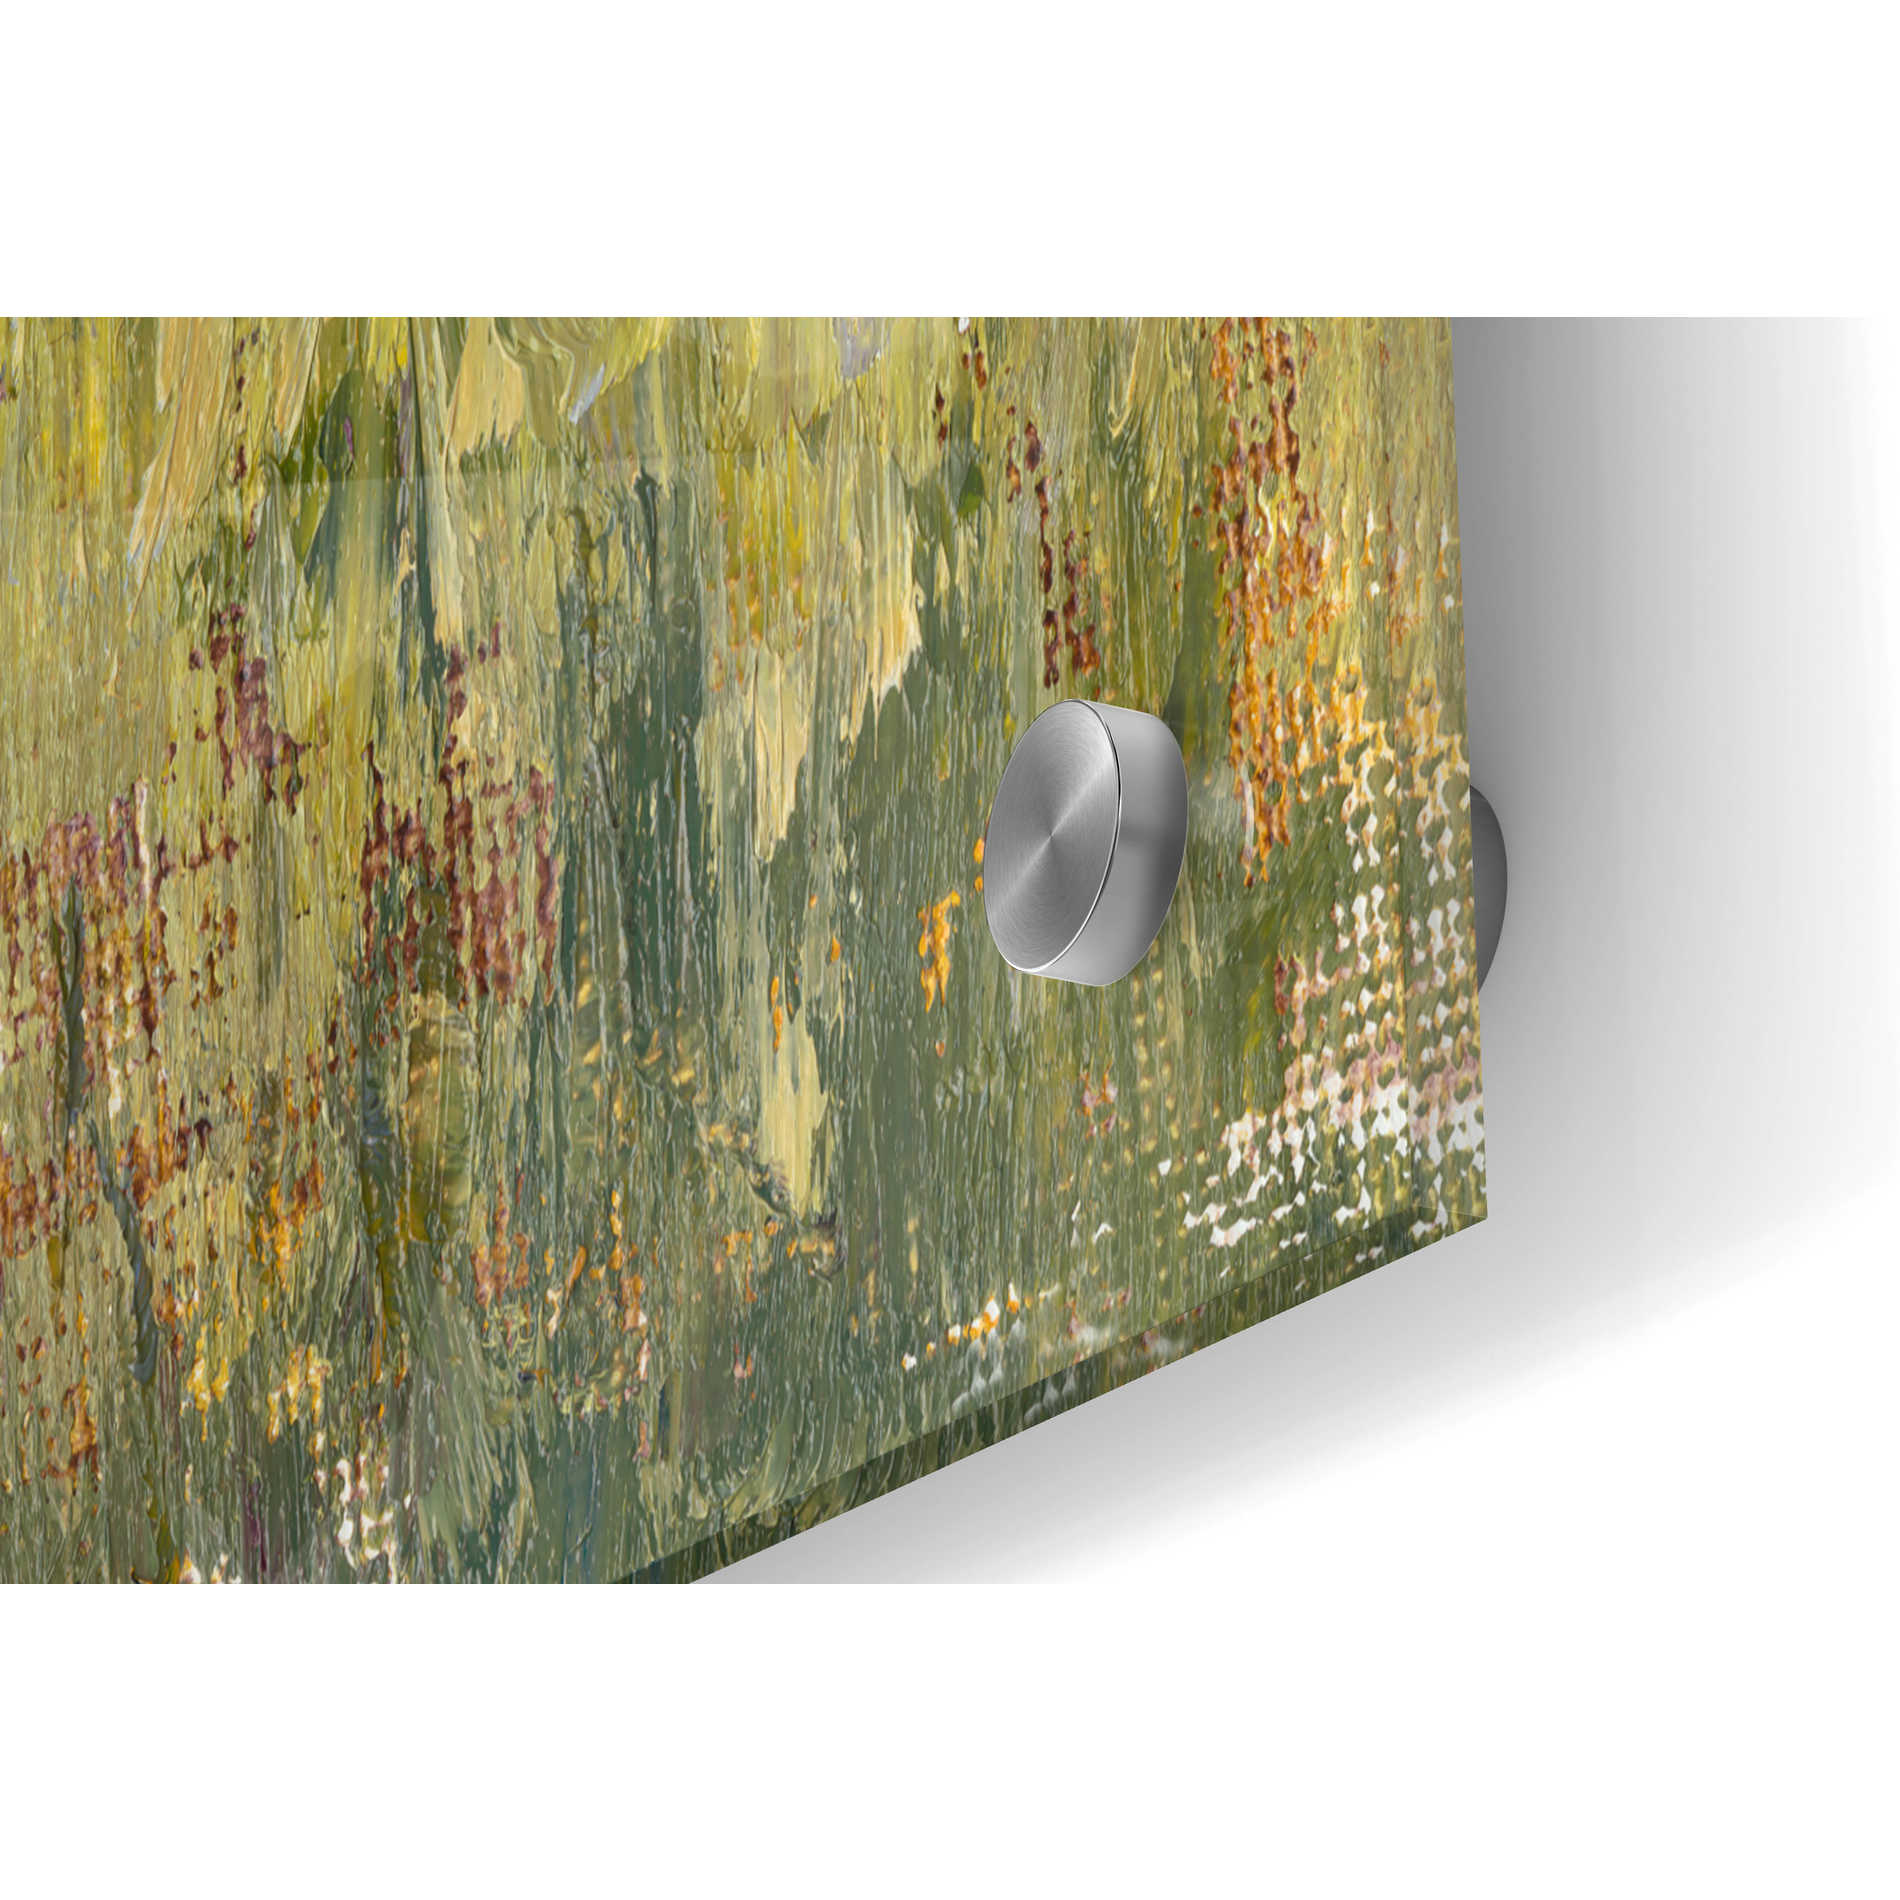 Epic Art 'Change of Seasons II' by Marilyn Wendling, Acrylic Glass Wall Art,36x24